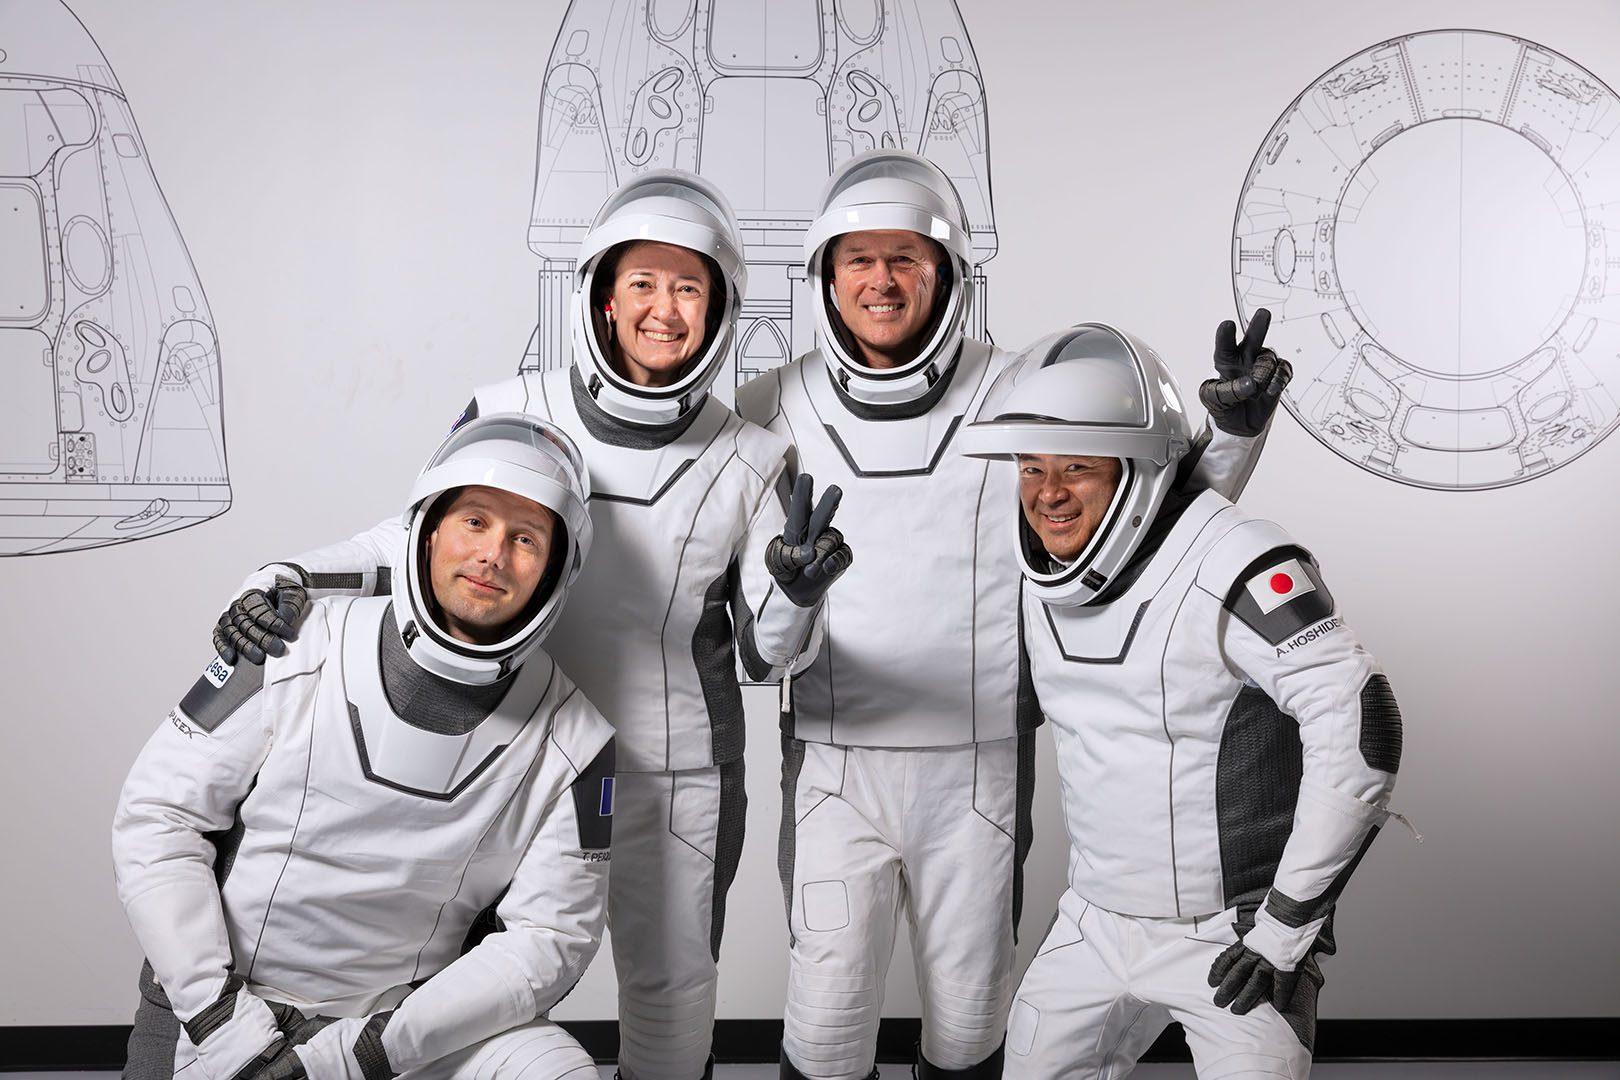 The Crew-2 Astronauts